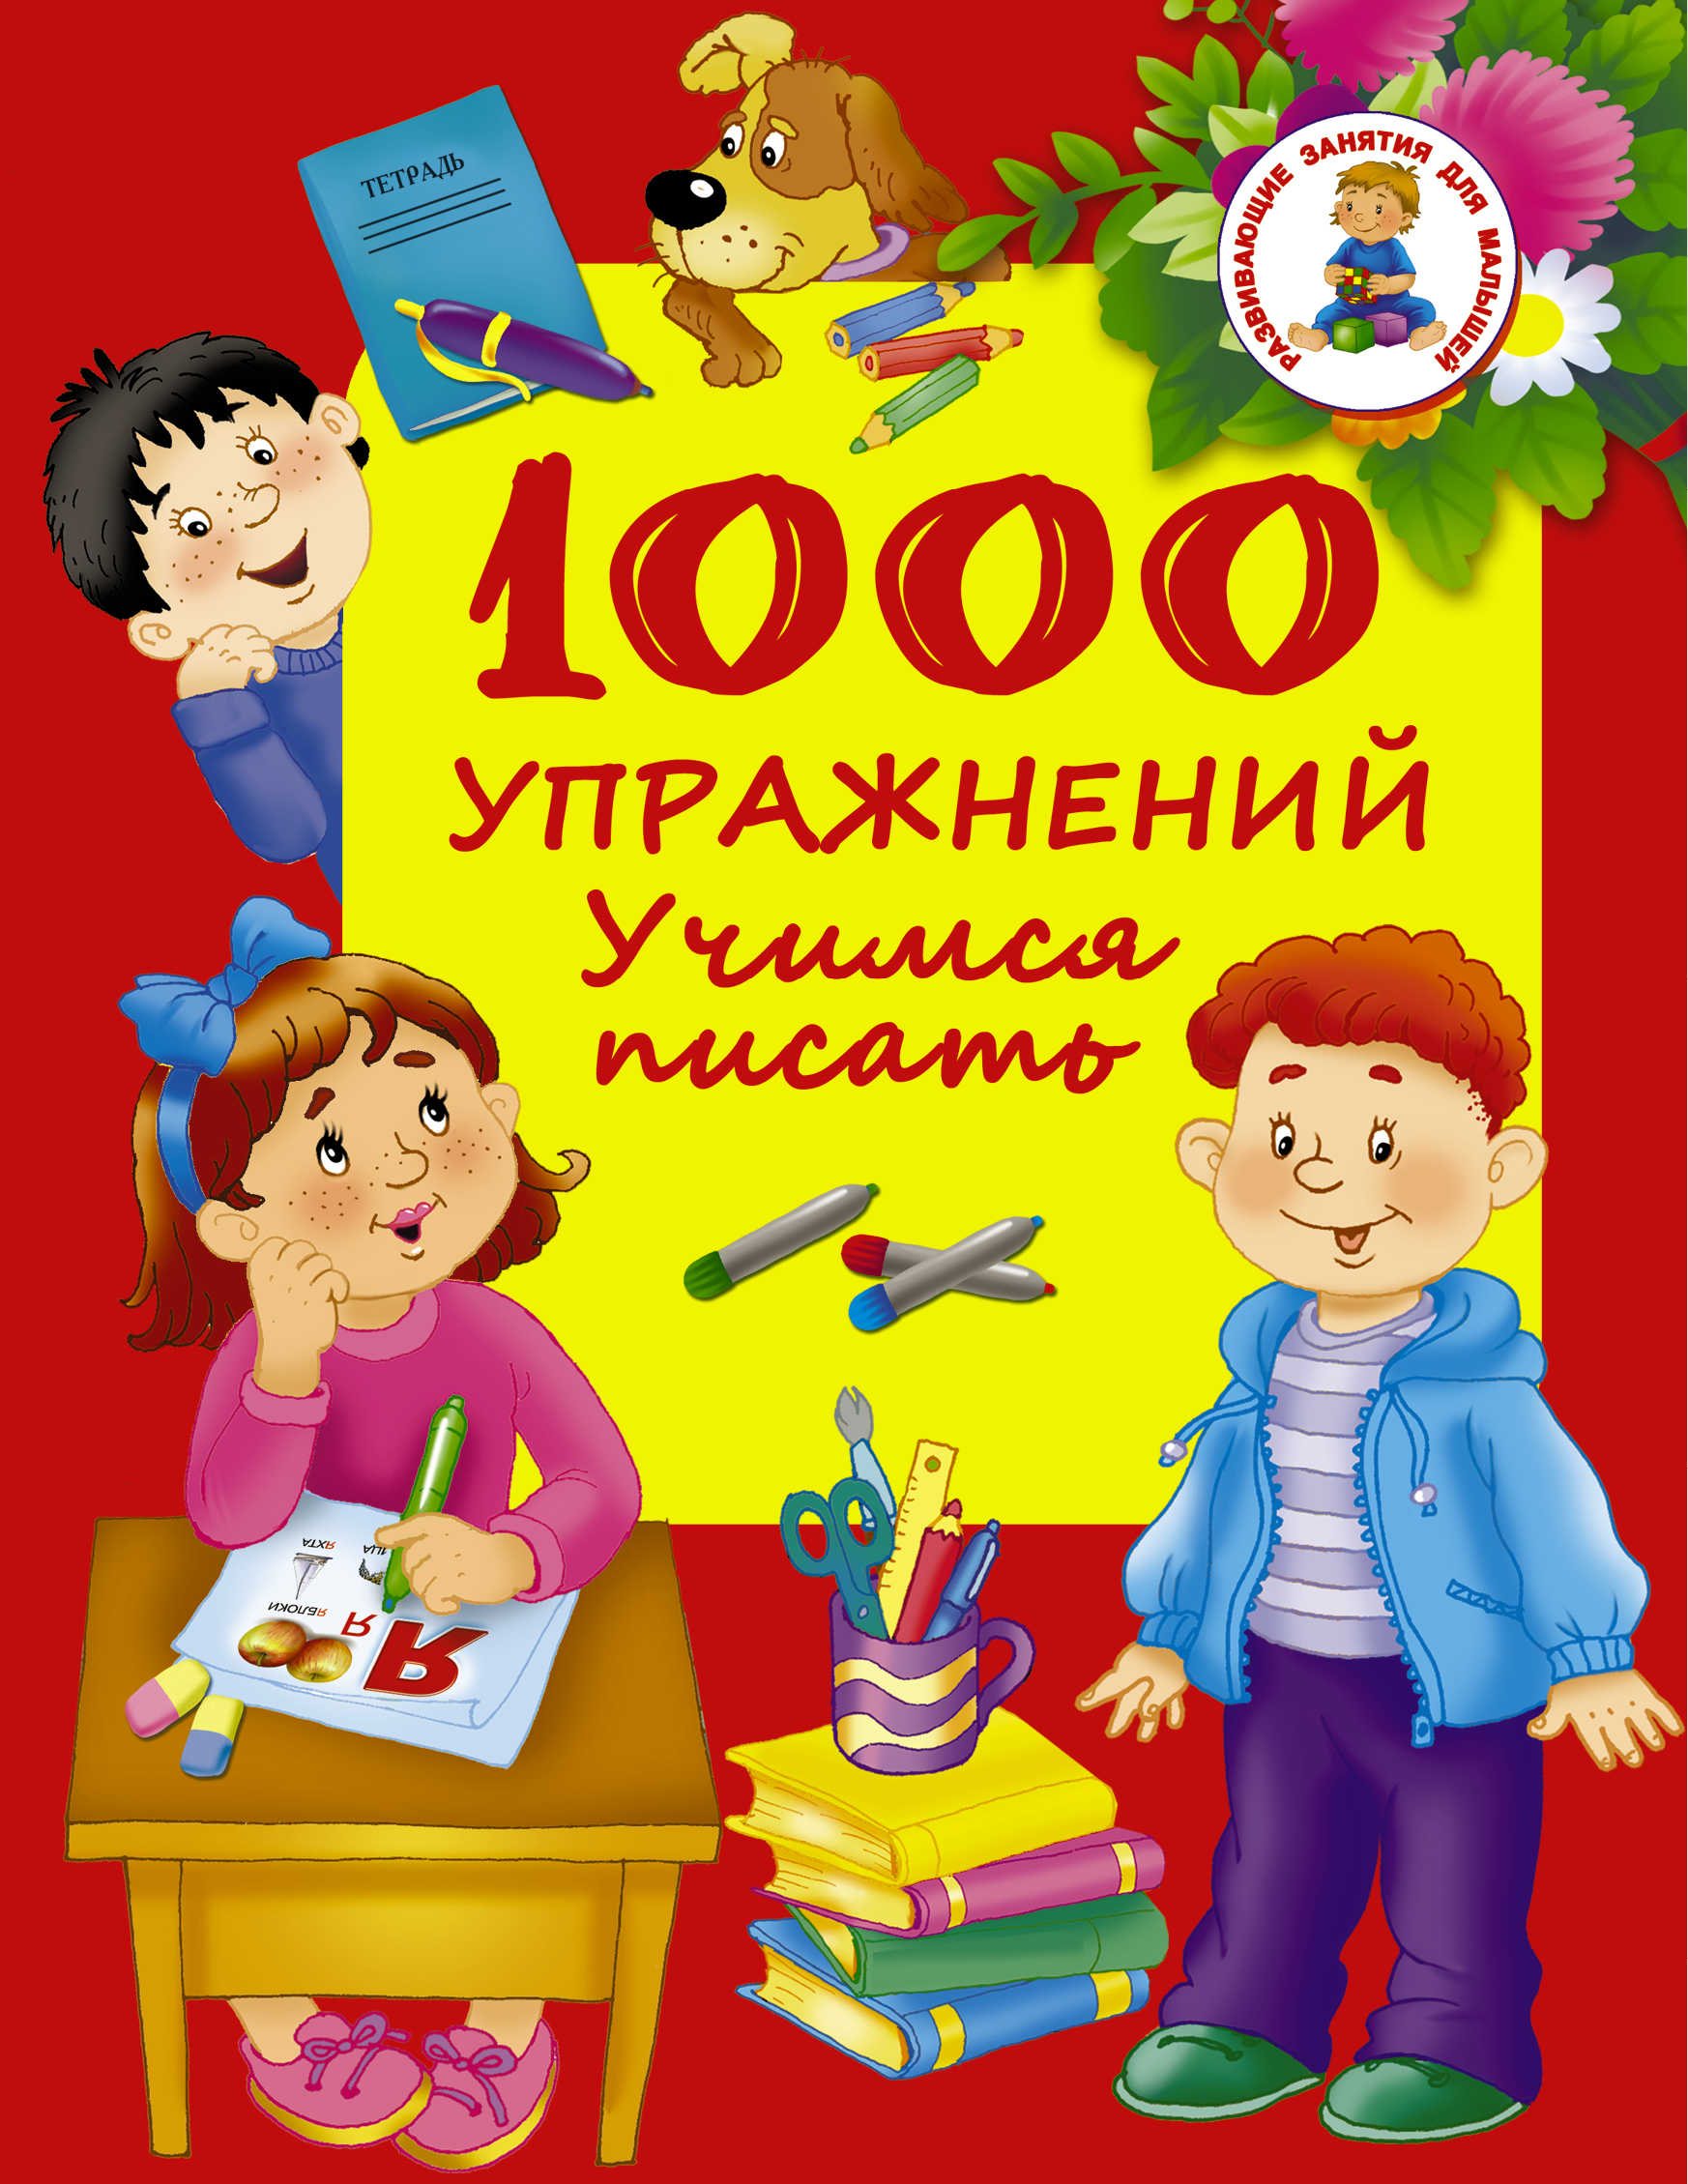 Дмитриева Валентина Геннадьевна 1000 упражнений. Учимся писать - страница 0